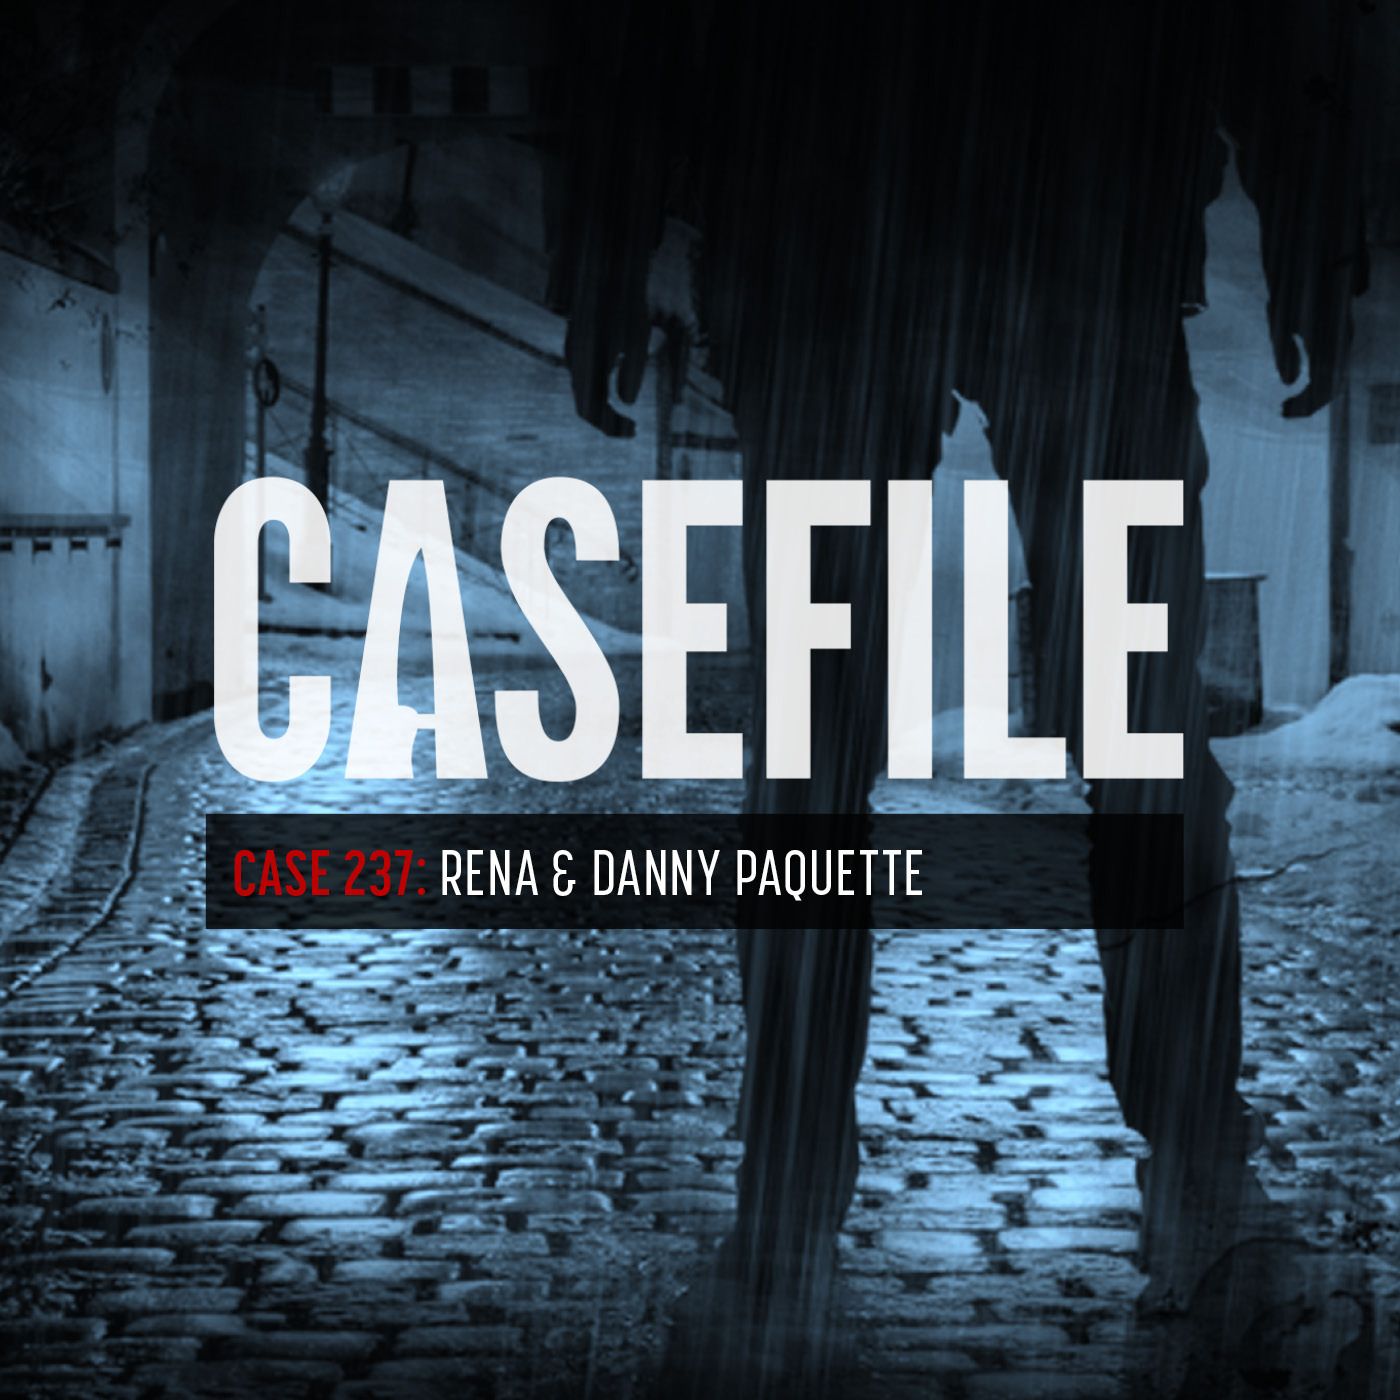 280: Case 237: Rena & Danny Paquette